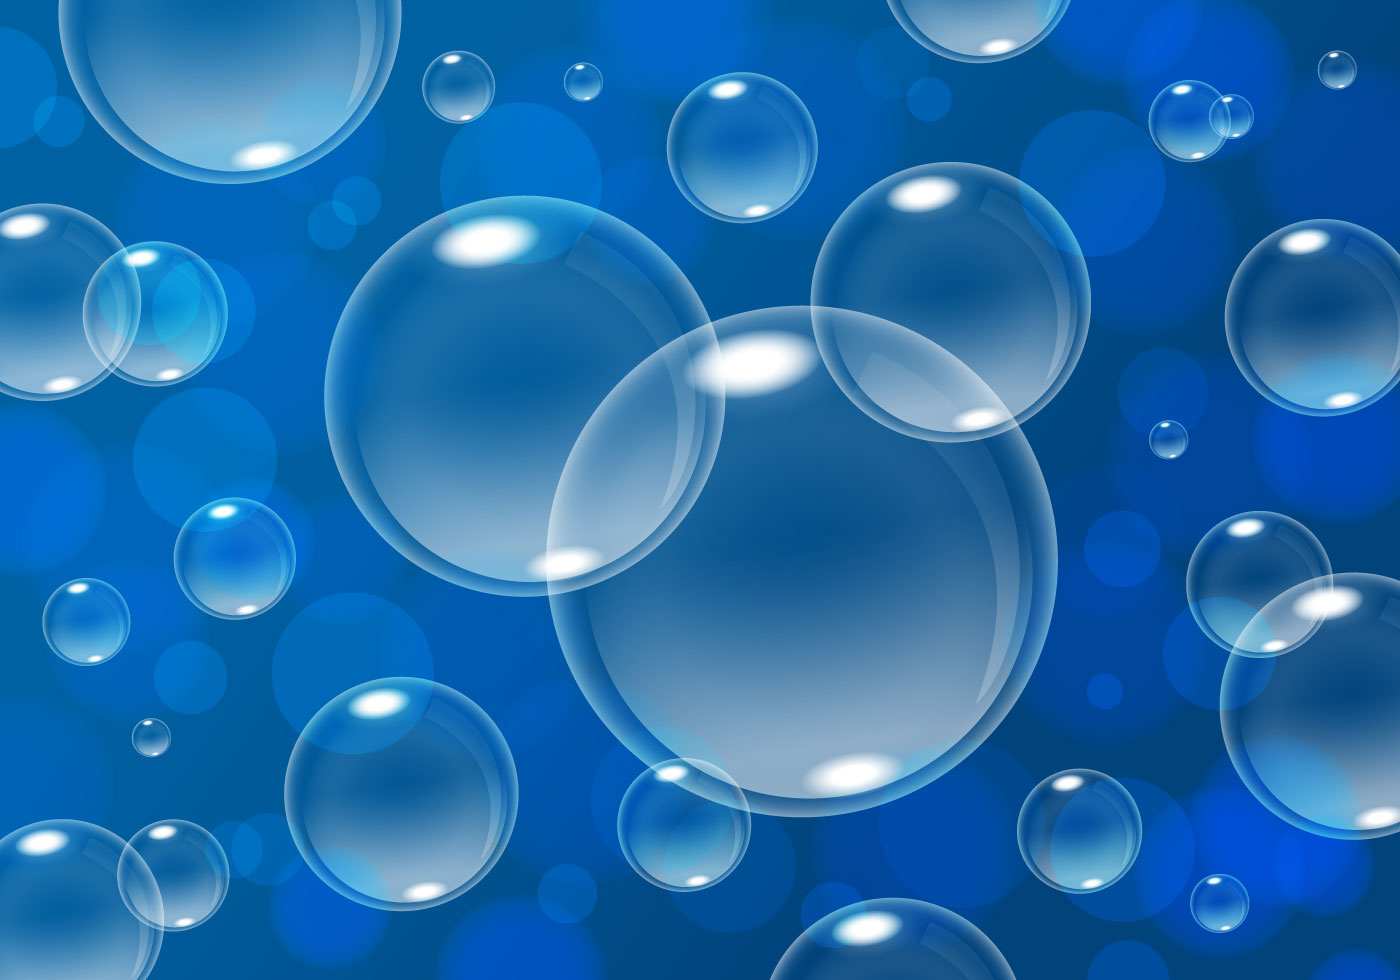 fondo de pantalla de burbuja azul,azul,agua,agua,azul cobalto,soltar